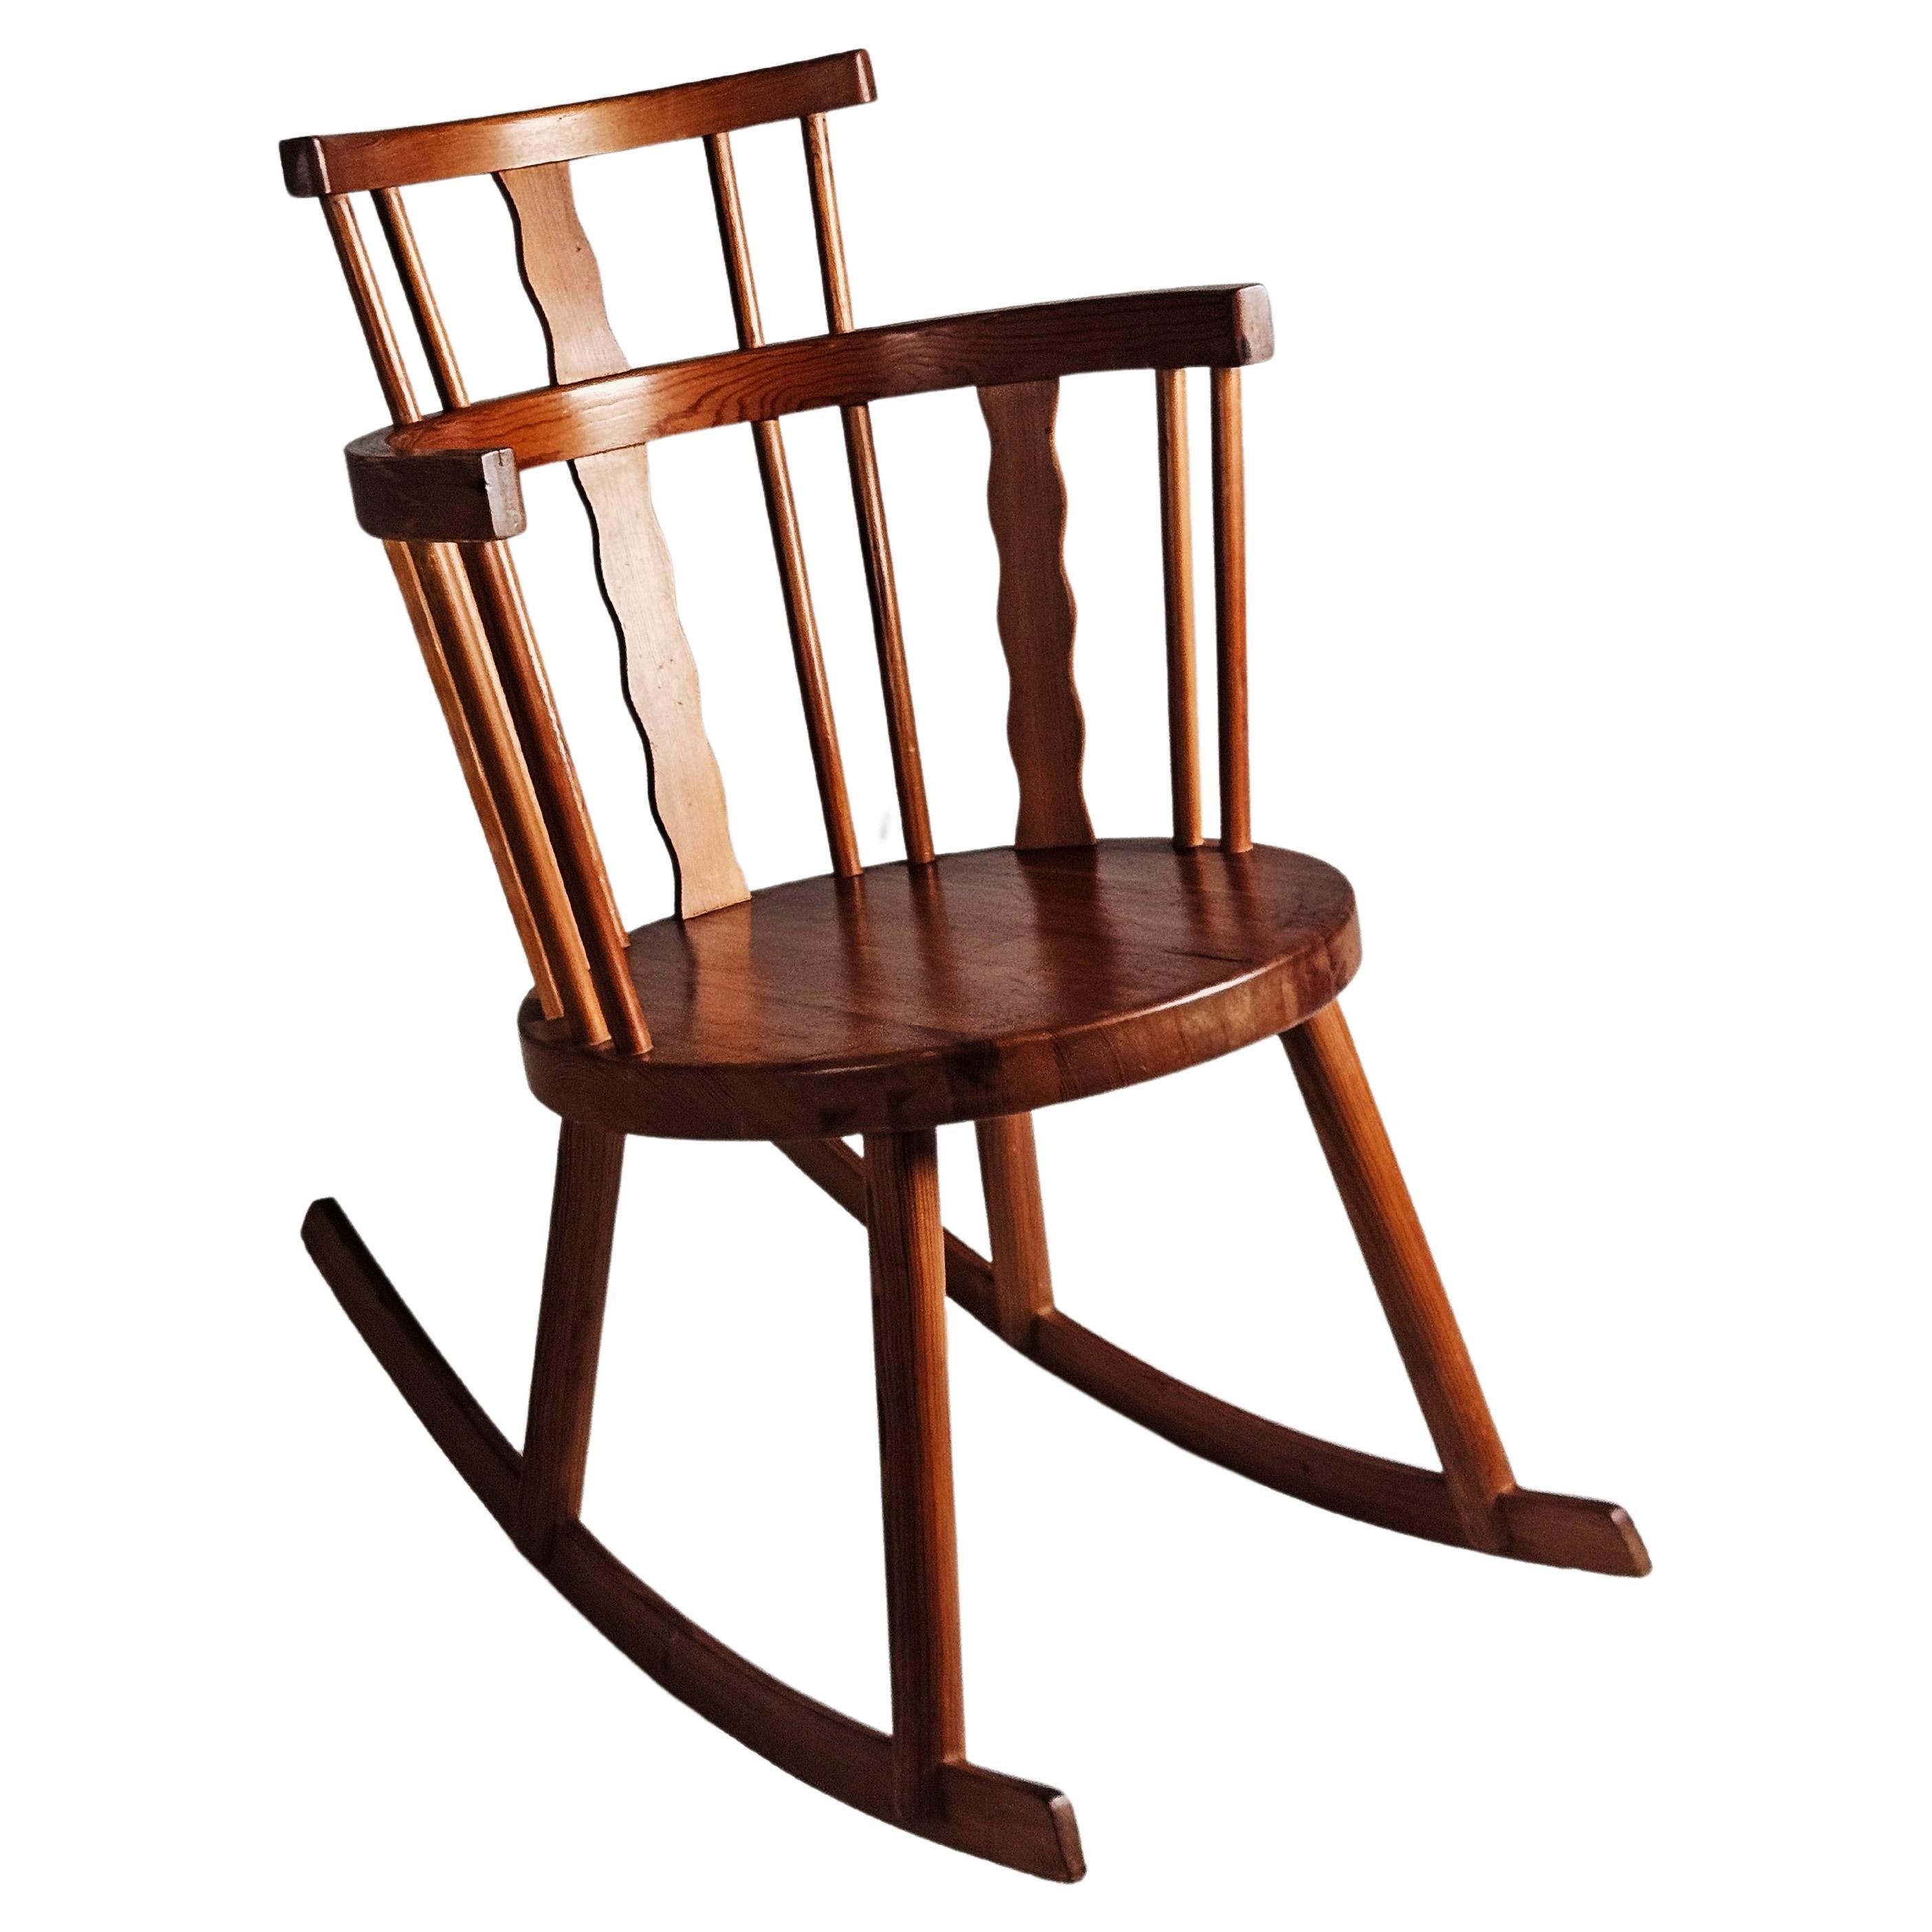 Pine rocking chair by Steneby hemslöjd, Sweden, 1930s